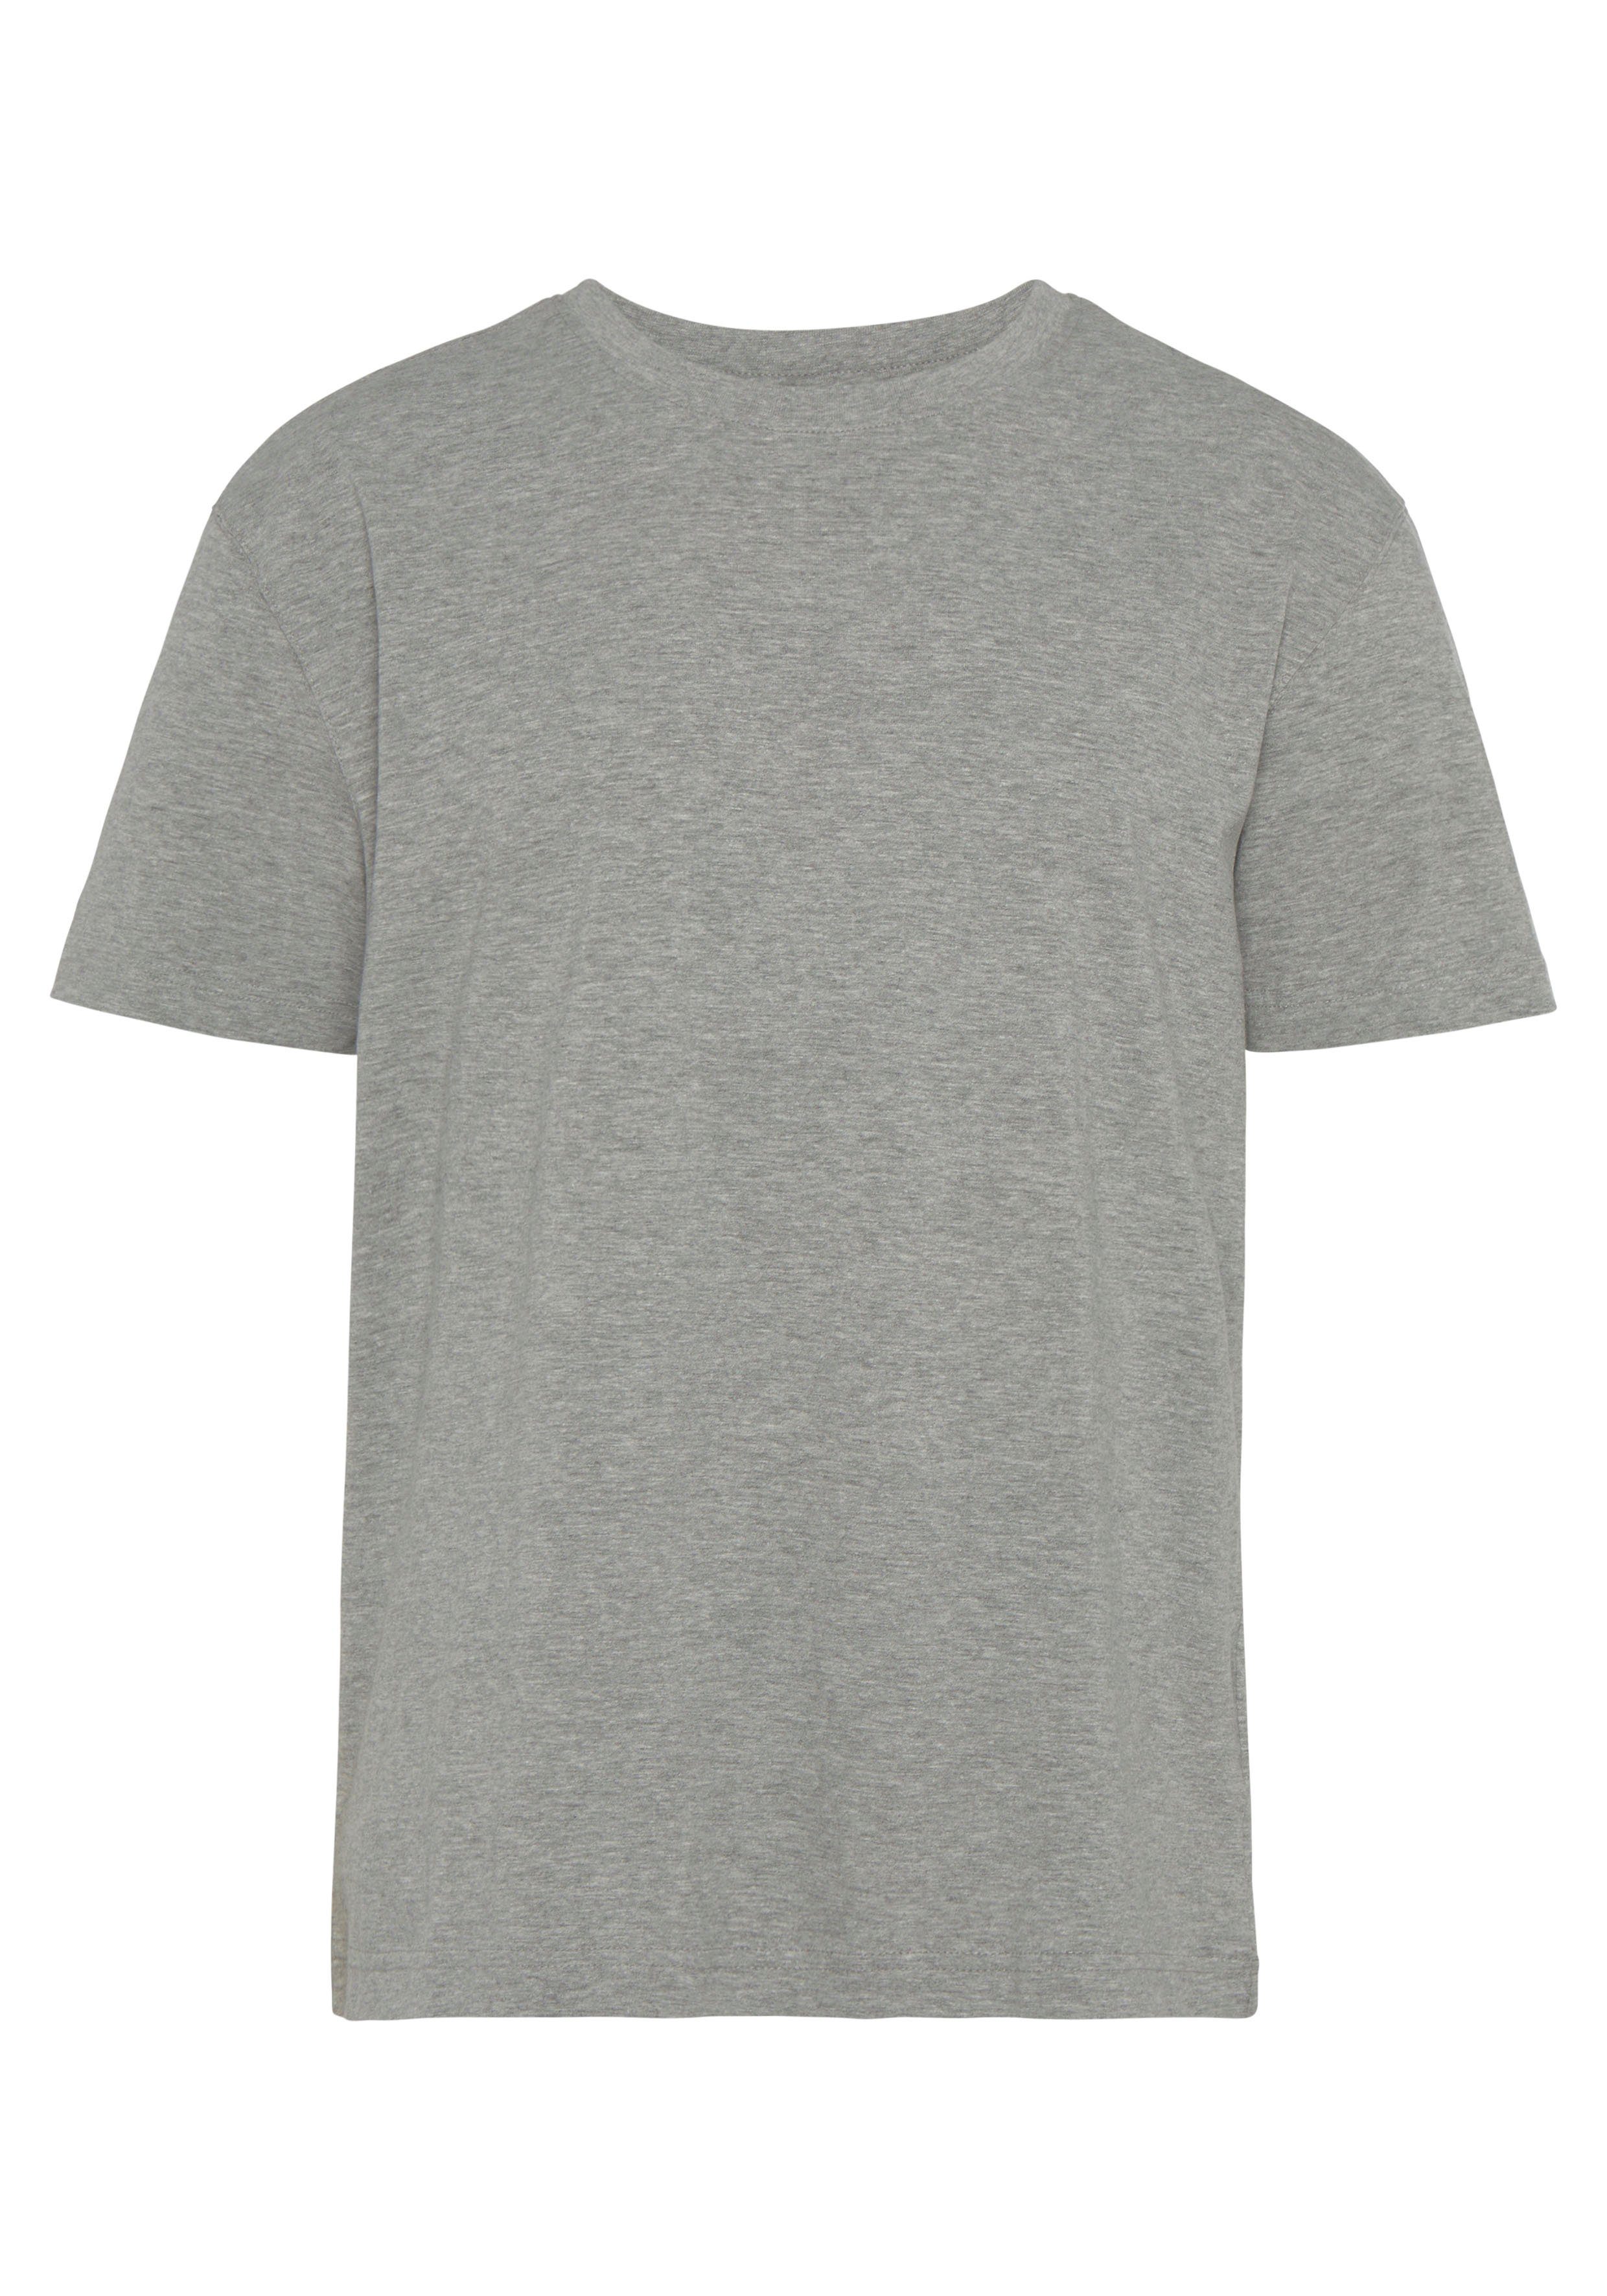 Man's perfekt World 3-tlg., 3er-Pack) als weiss-grau-mel.-schwarz (Packung, T-shirt T-Shirt Unterzieh-